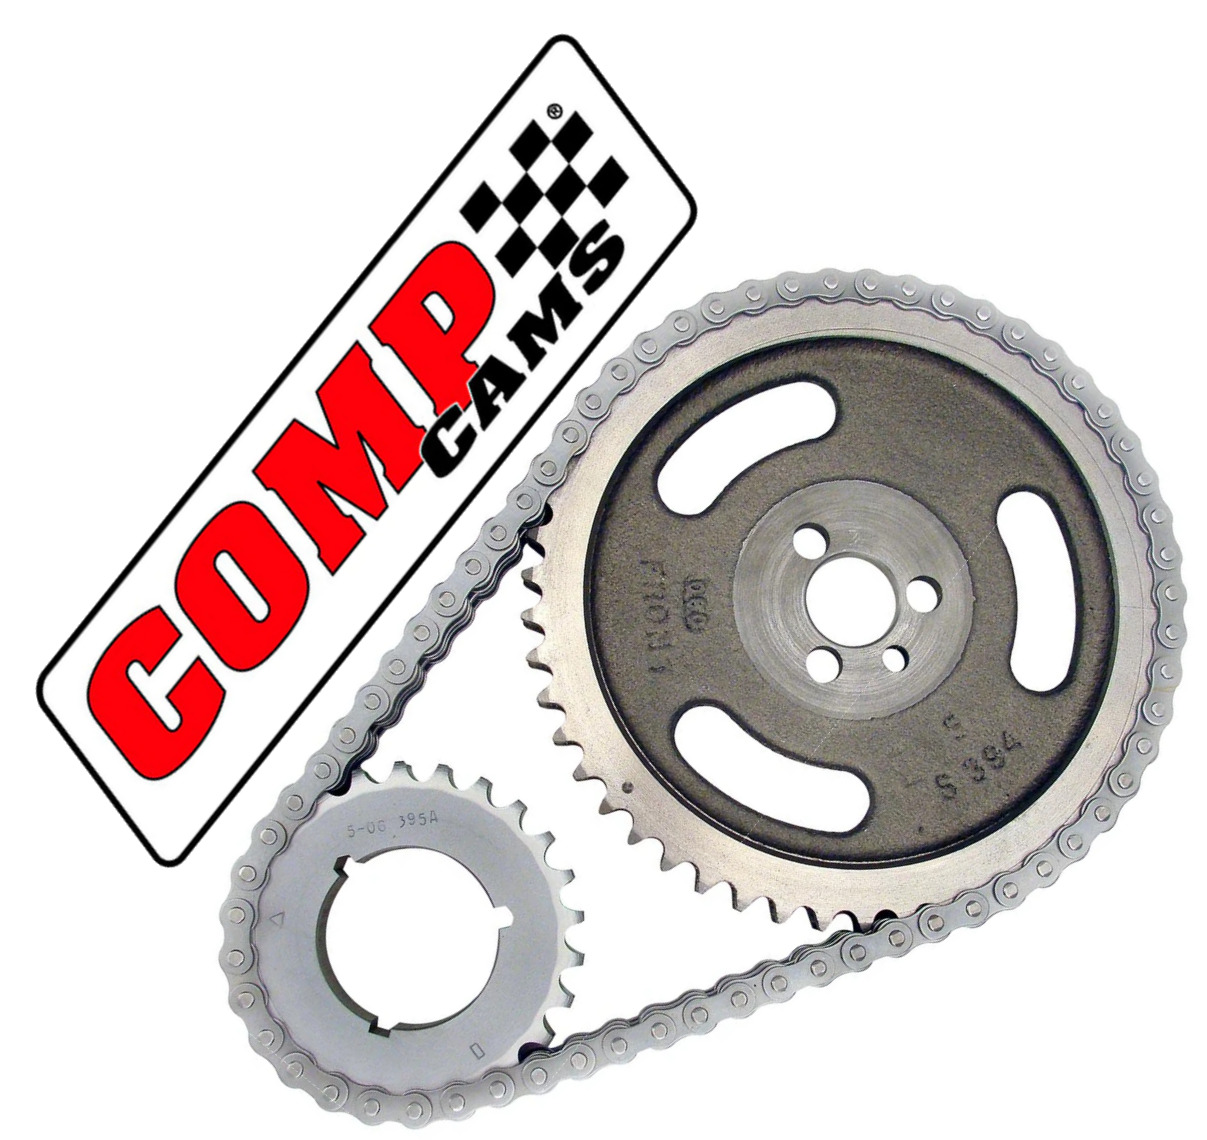 Comp Cams 2100 Magnum Double Roller Timing Set - Chevrolet SBC V6 V8 265 350 400